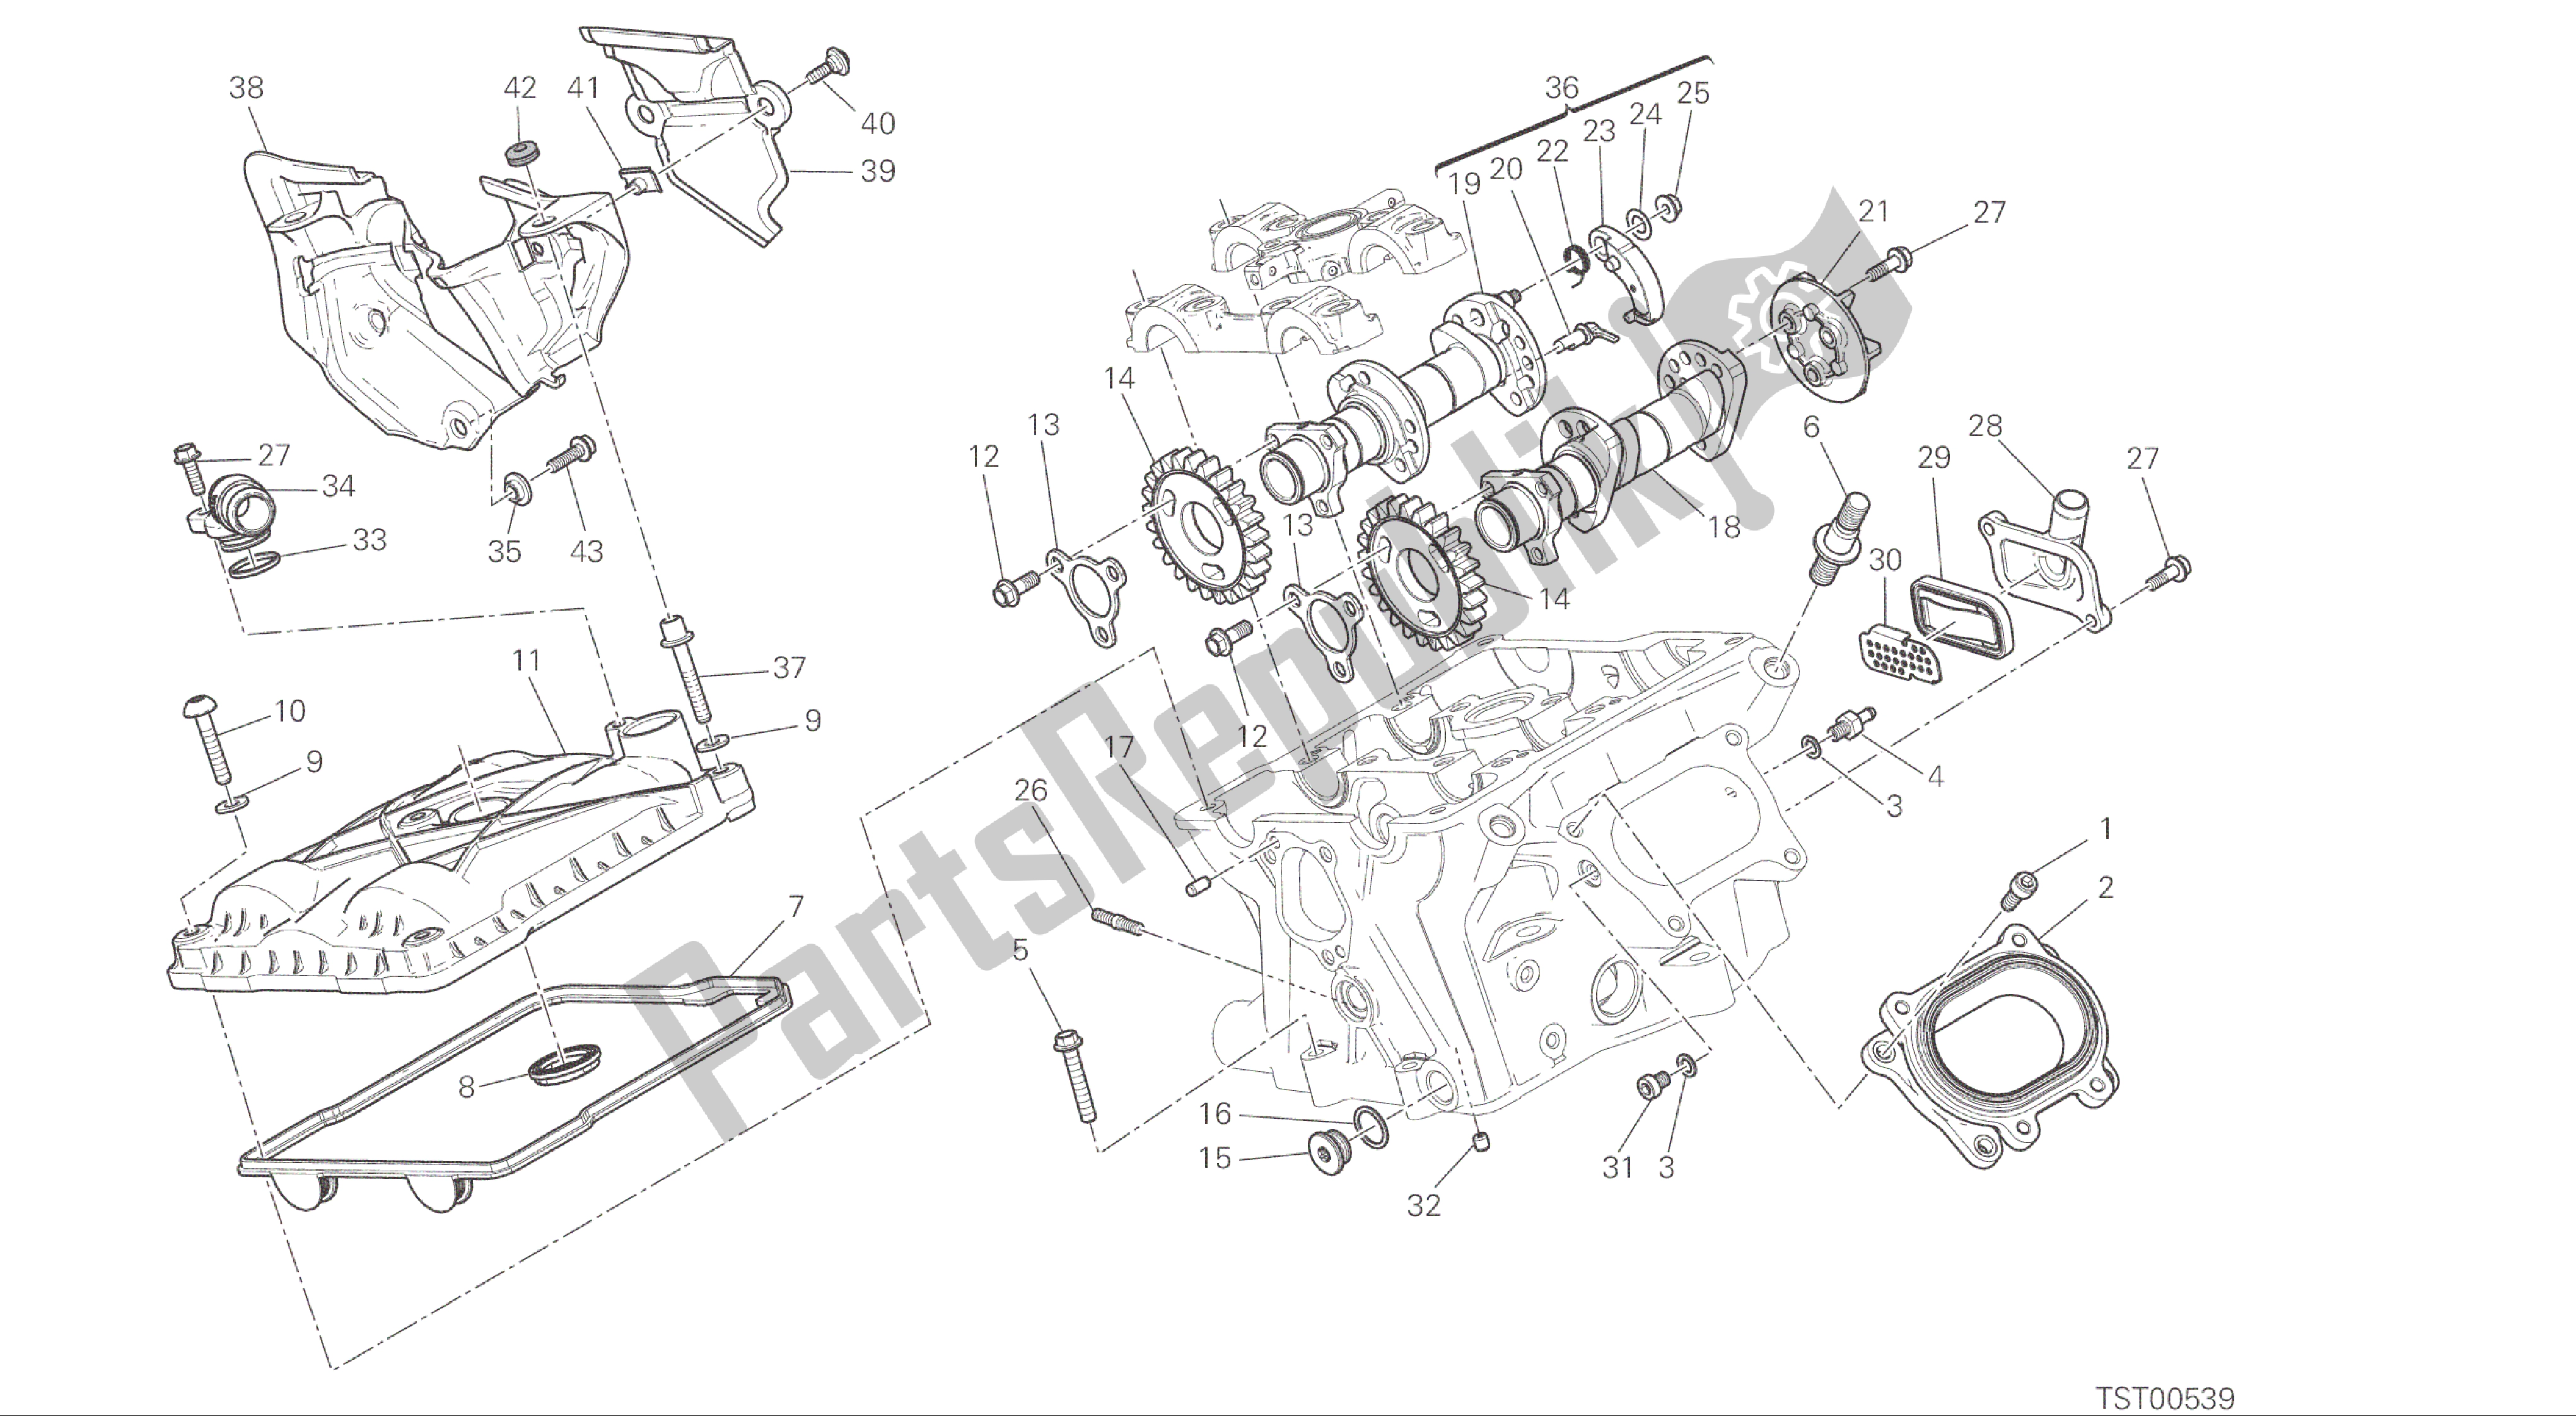 Alle onderdelen voor de Tekening 13a - Verticale Cilinderkop - Timinggroep Motor van de Ducati Panigale R 1200 2016